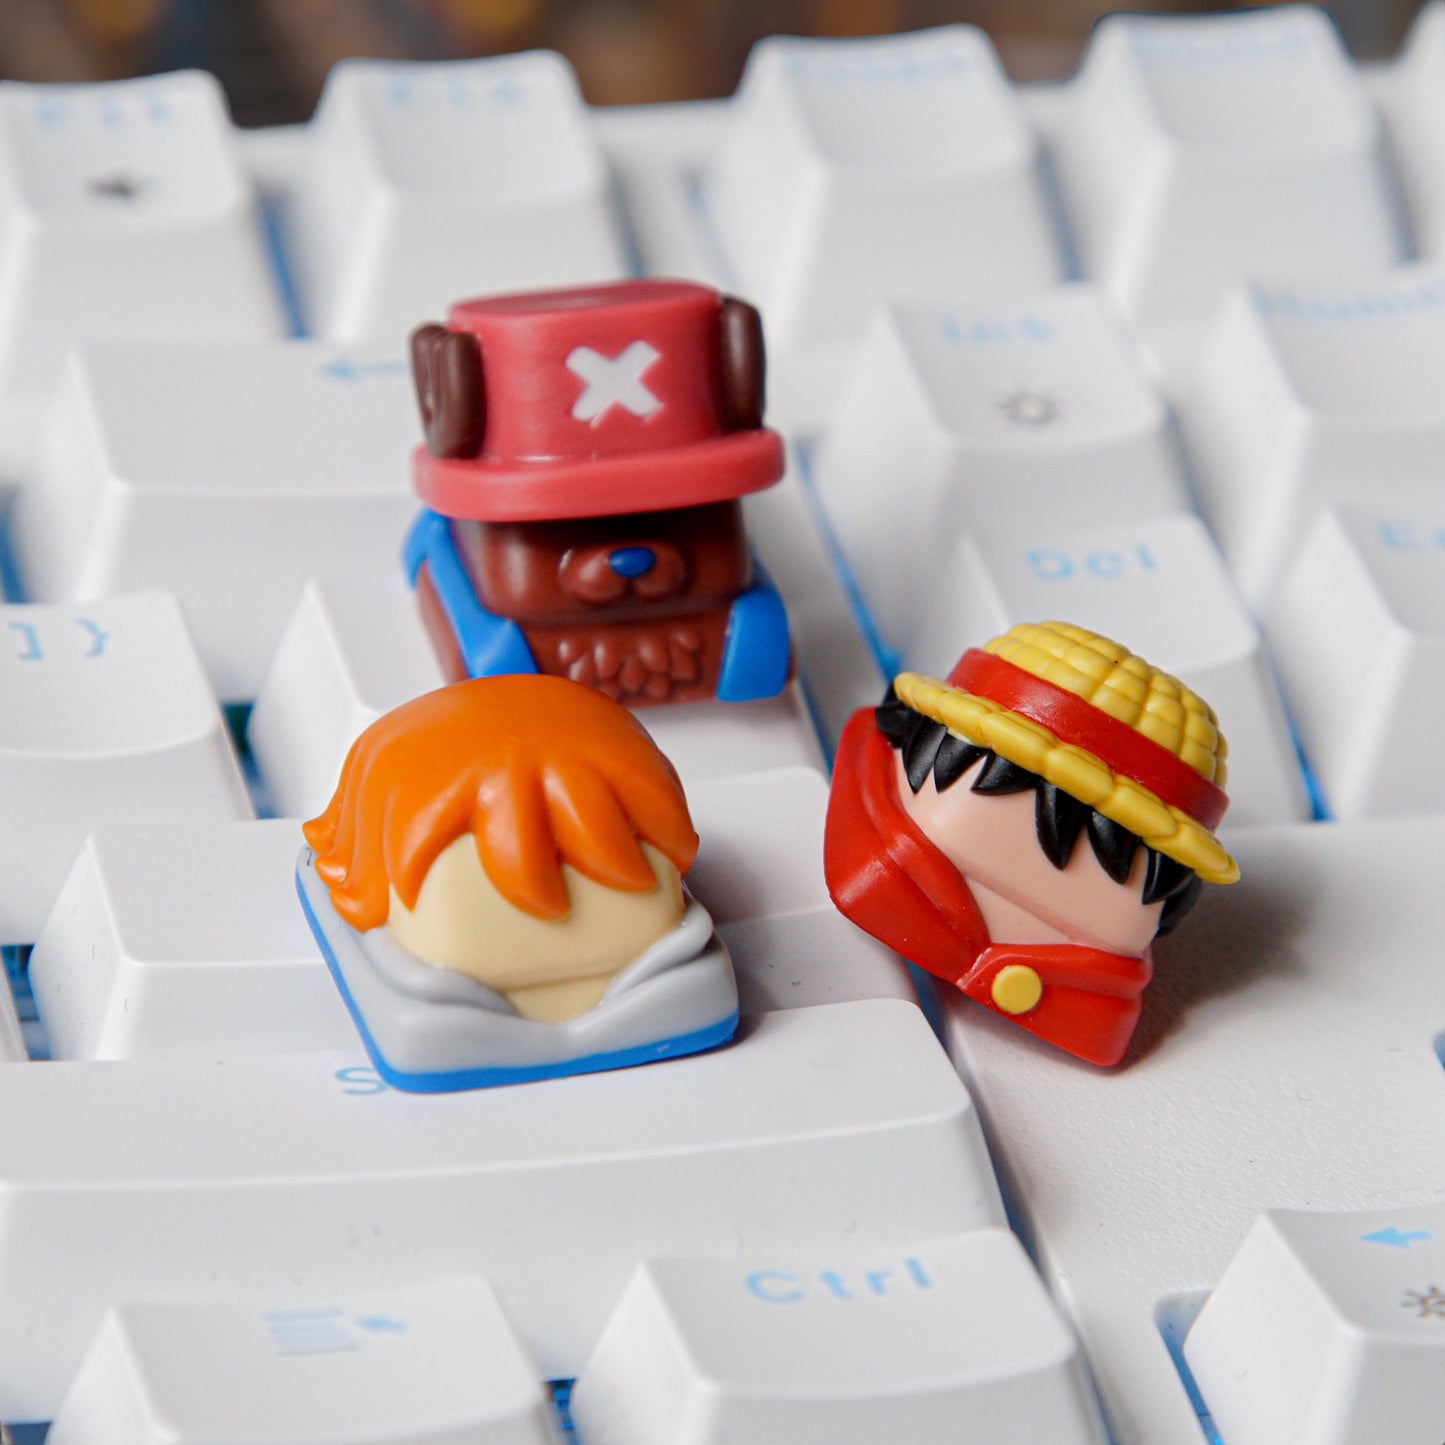 S-traw.Hat Pi.rates Keycap- One-Pie.ce Keycap- Anime Keycap- Keycap for MX Cherry Switches Mechanical Keyboard - Datkey Studio